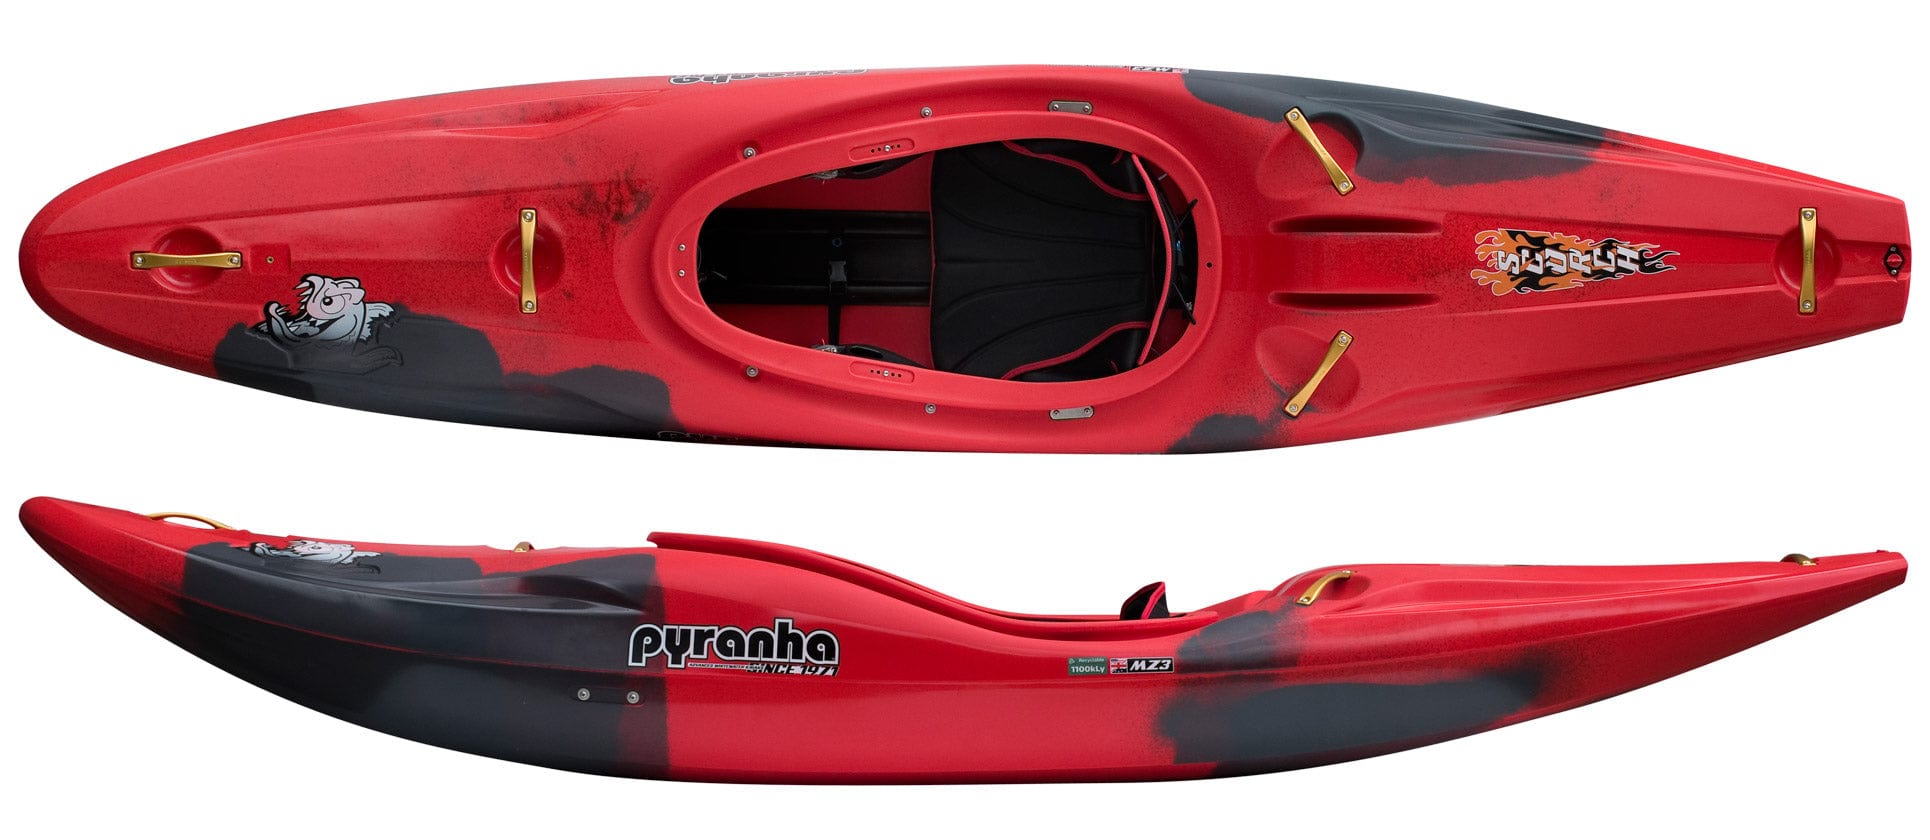 Pyranha Kayaks Scorch X